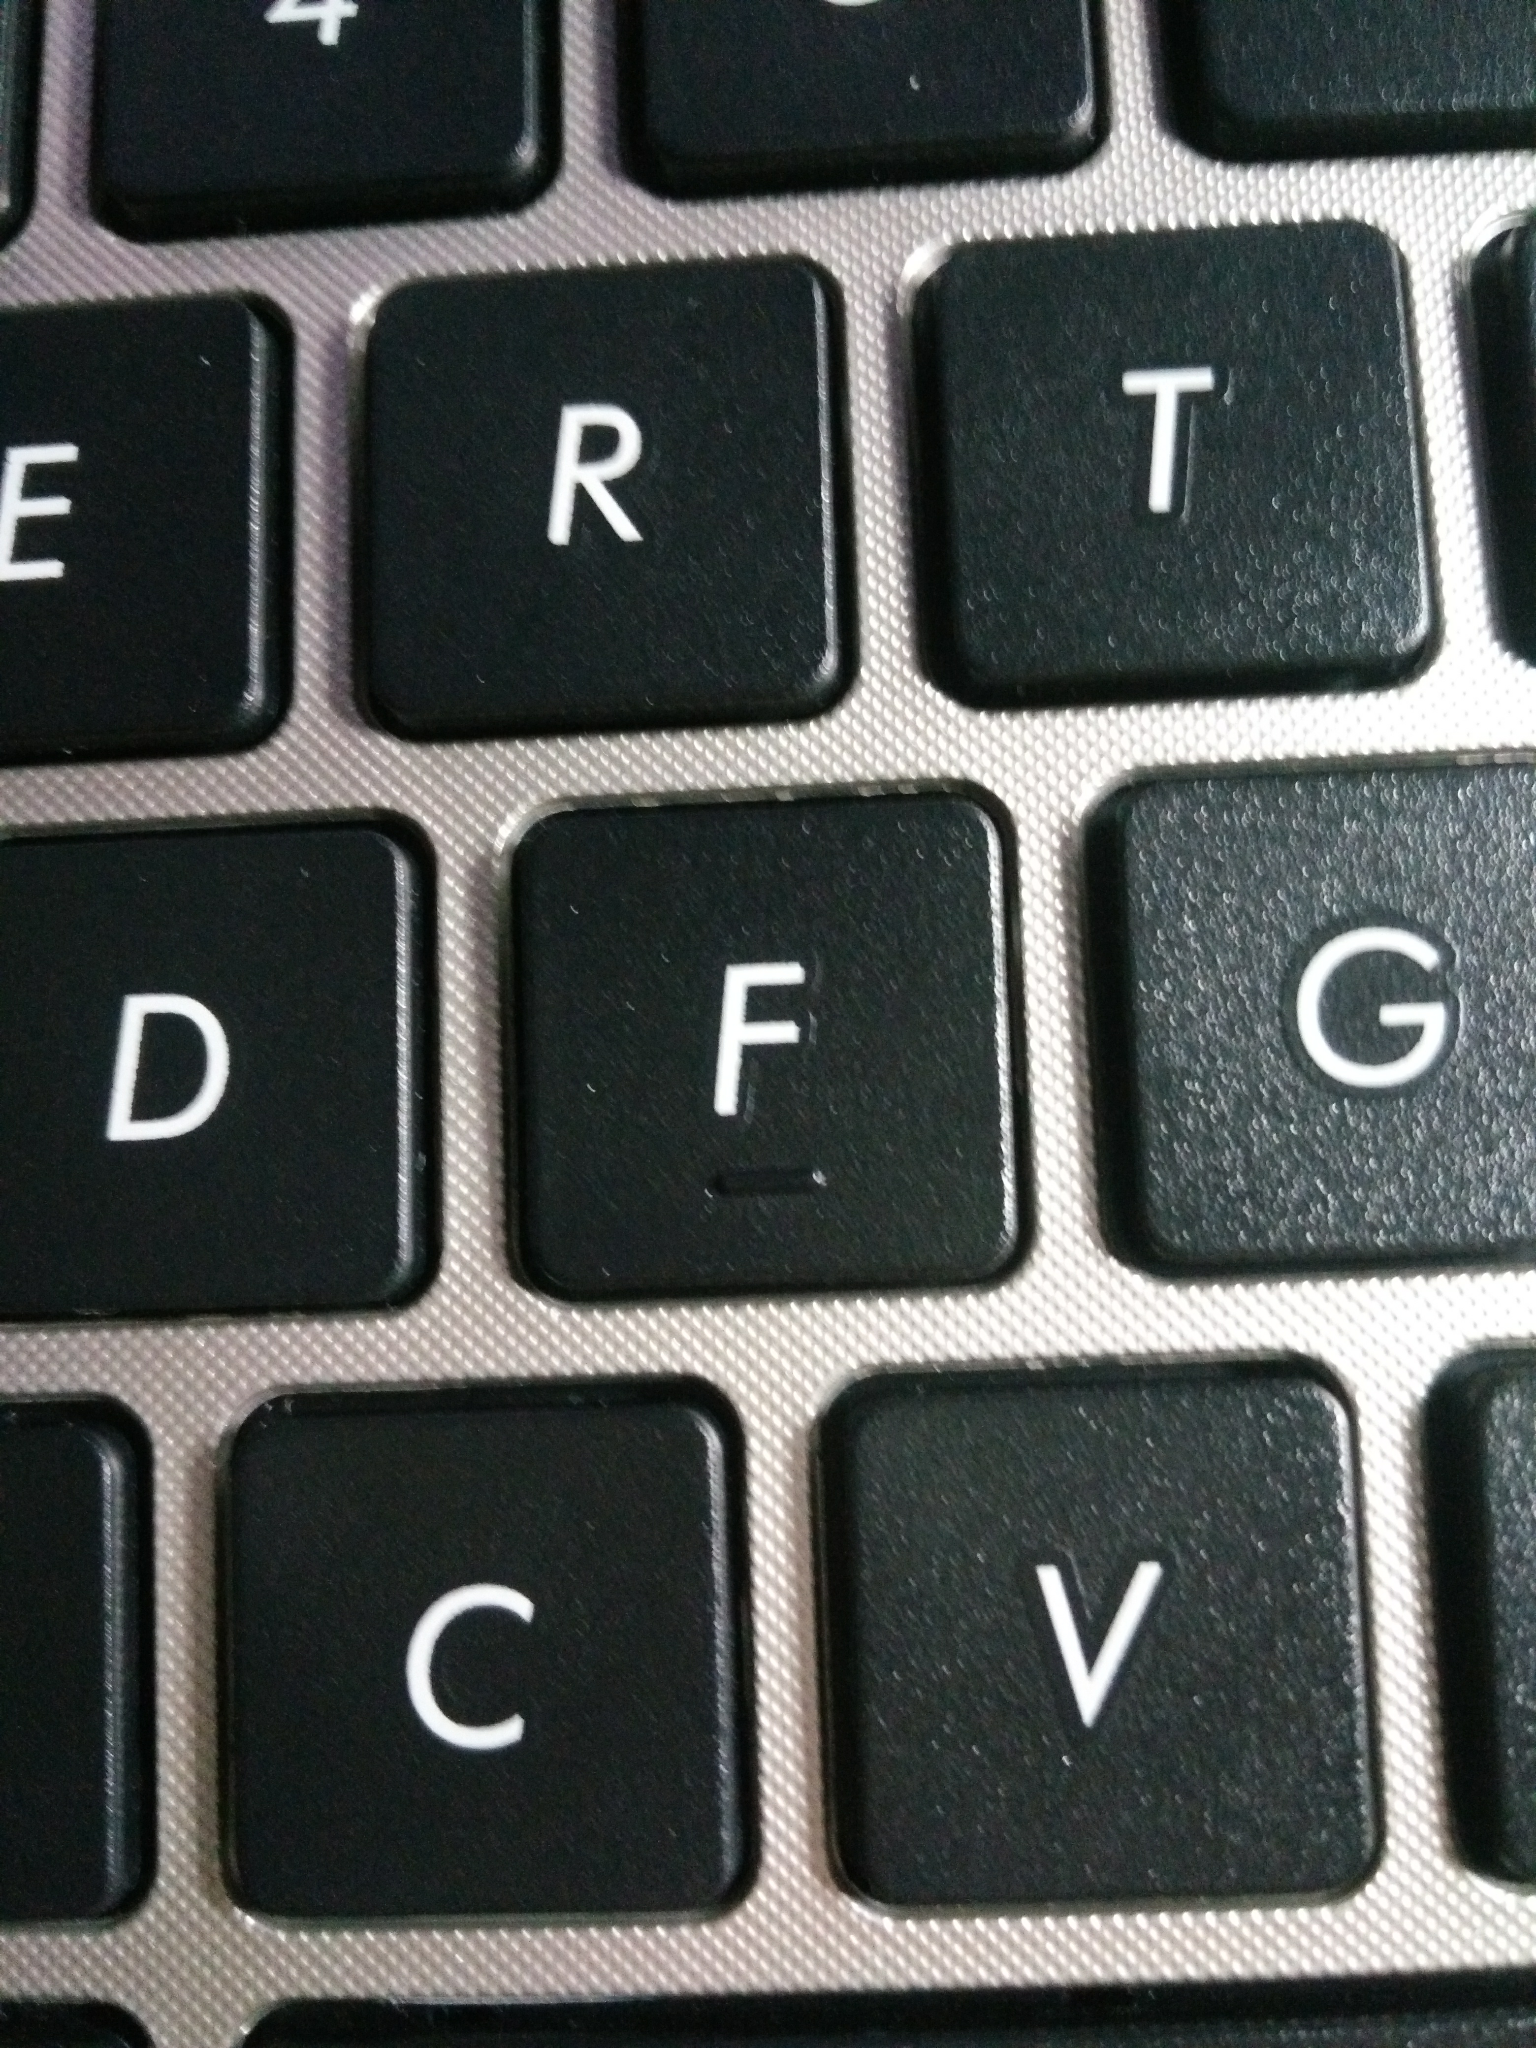 键盘f,j上有一个凸起,方便盲打定位,想来还真是挺妙的   显示全部